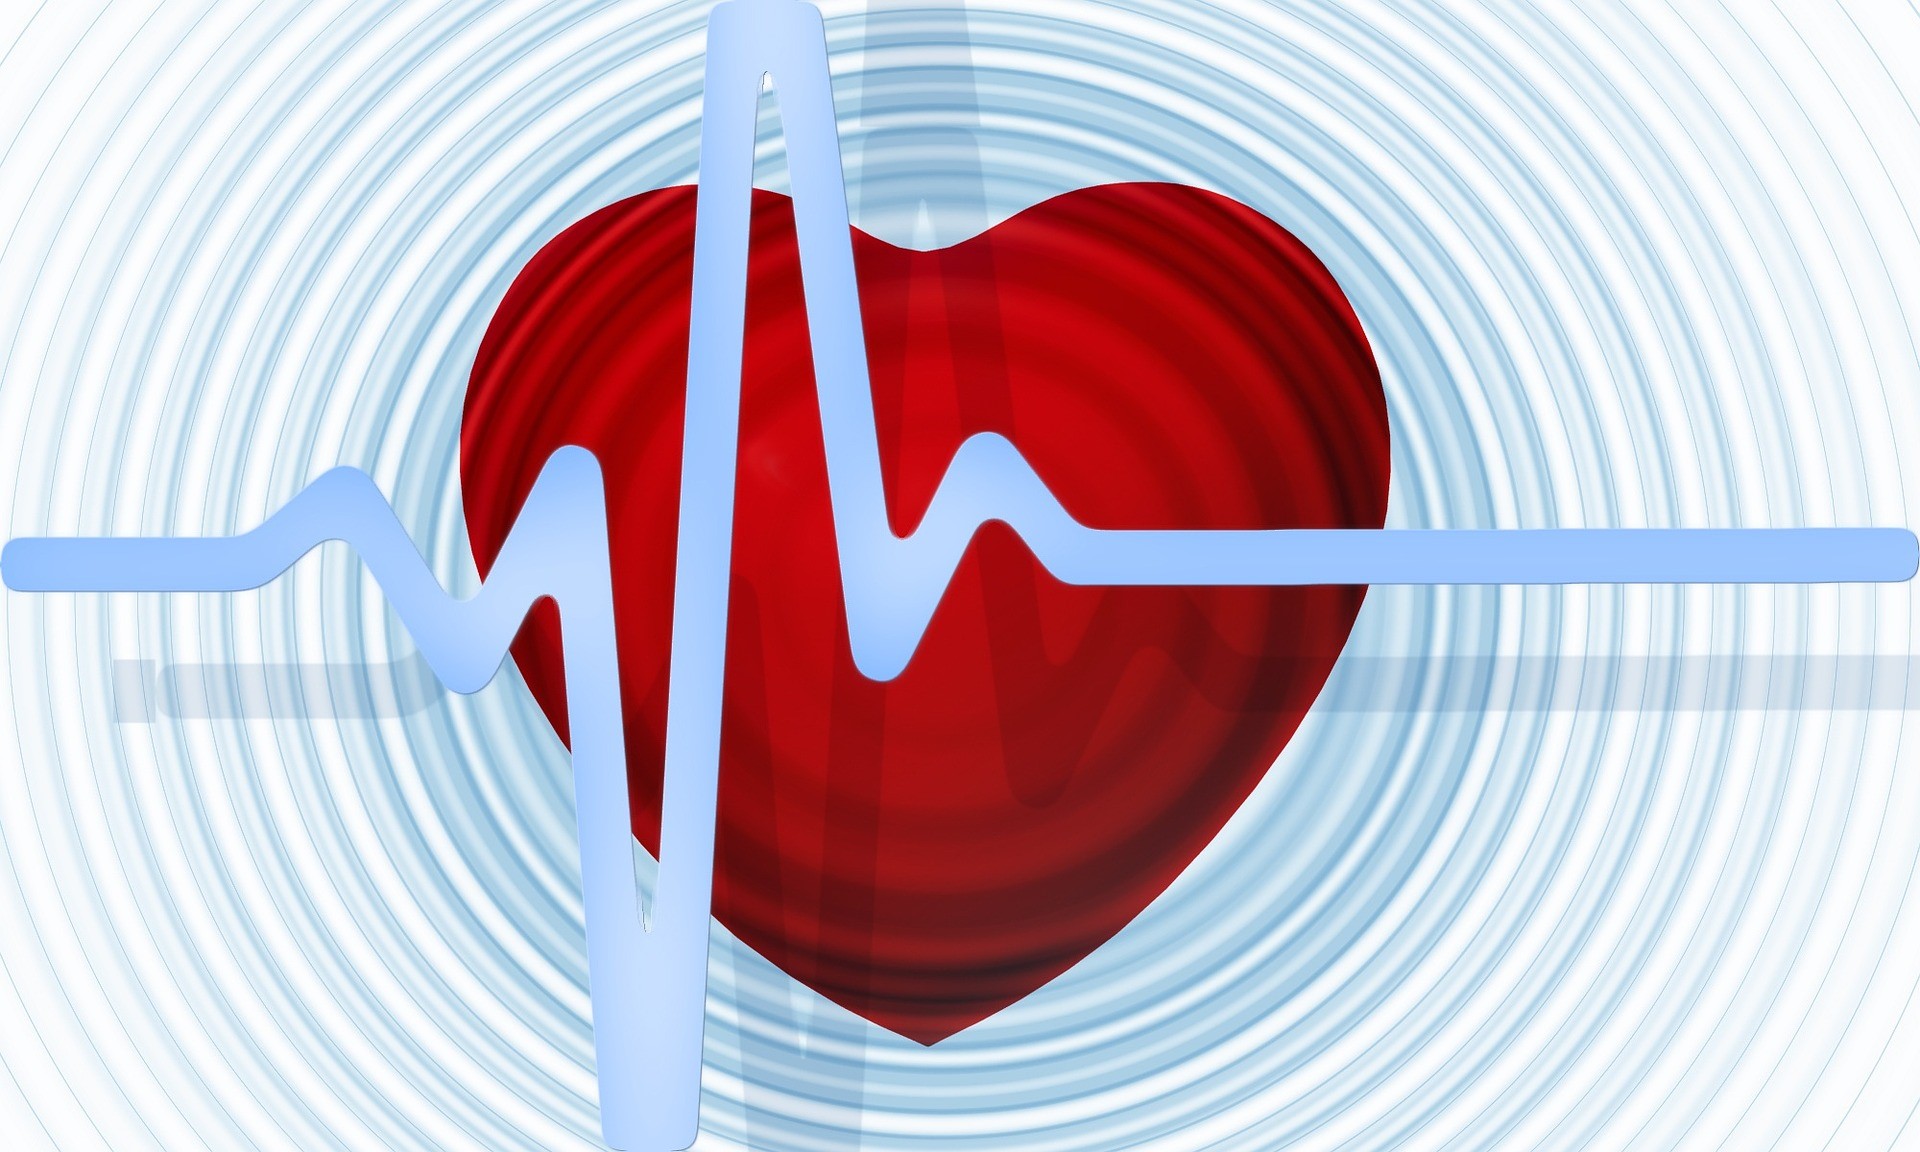 בריאות הלב צילום יחצ הרבלייף (3)